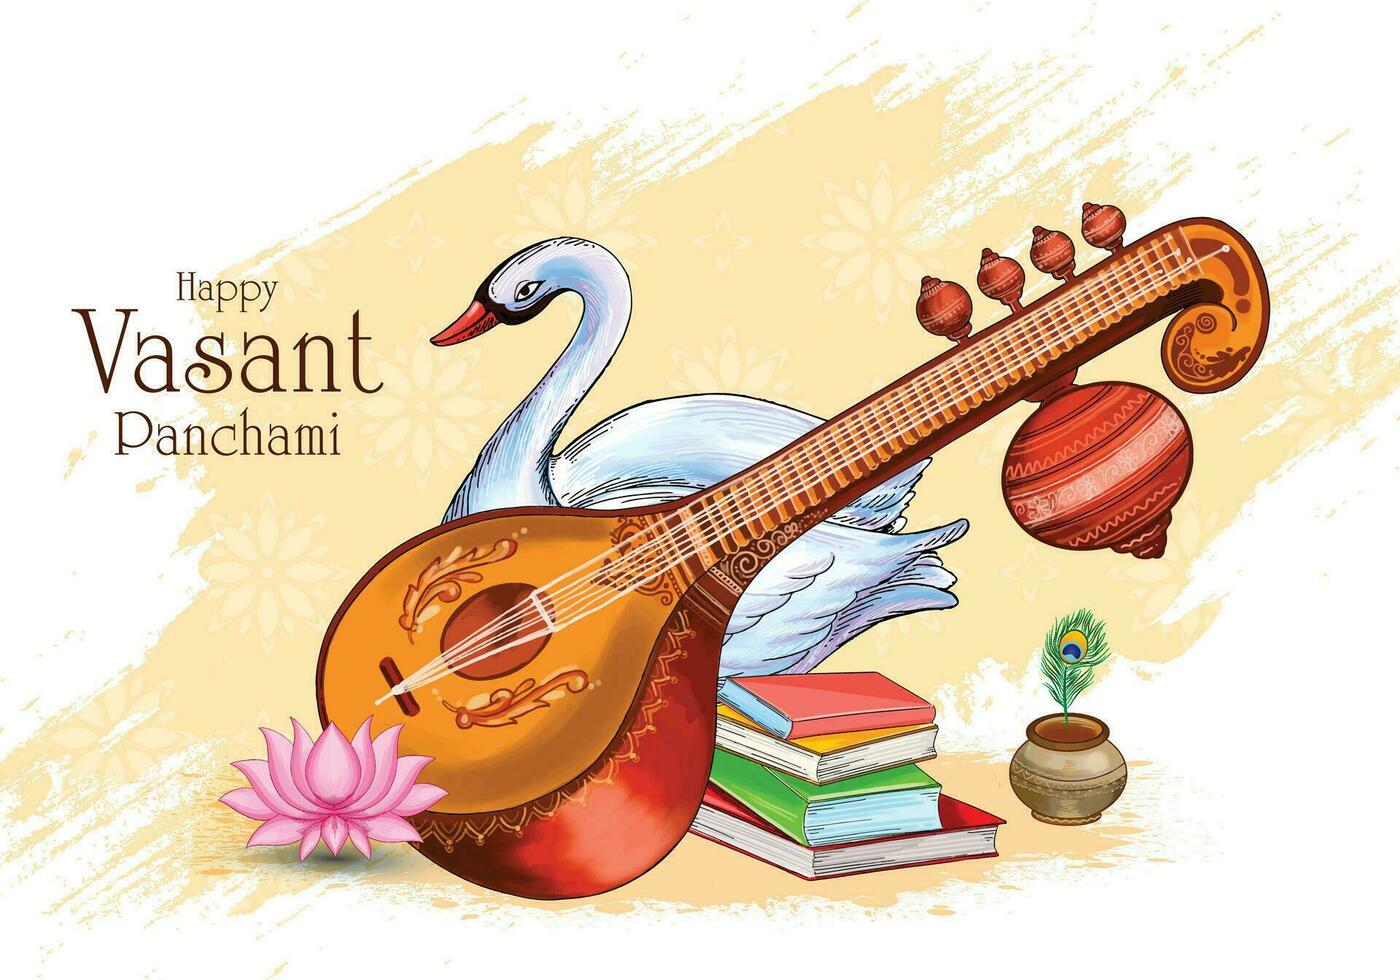 contento vasant panchami cultural indio festival tarjeta antecedentes vector